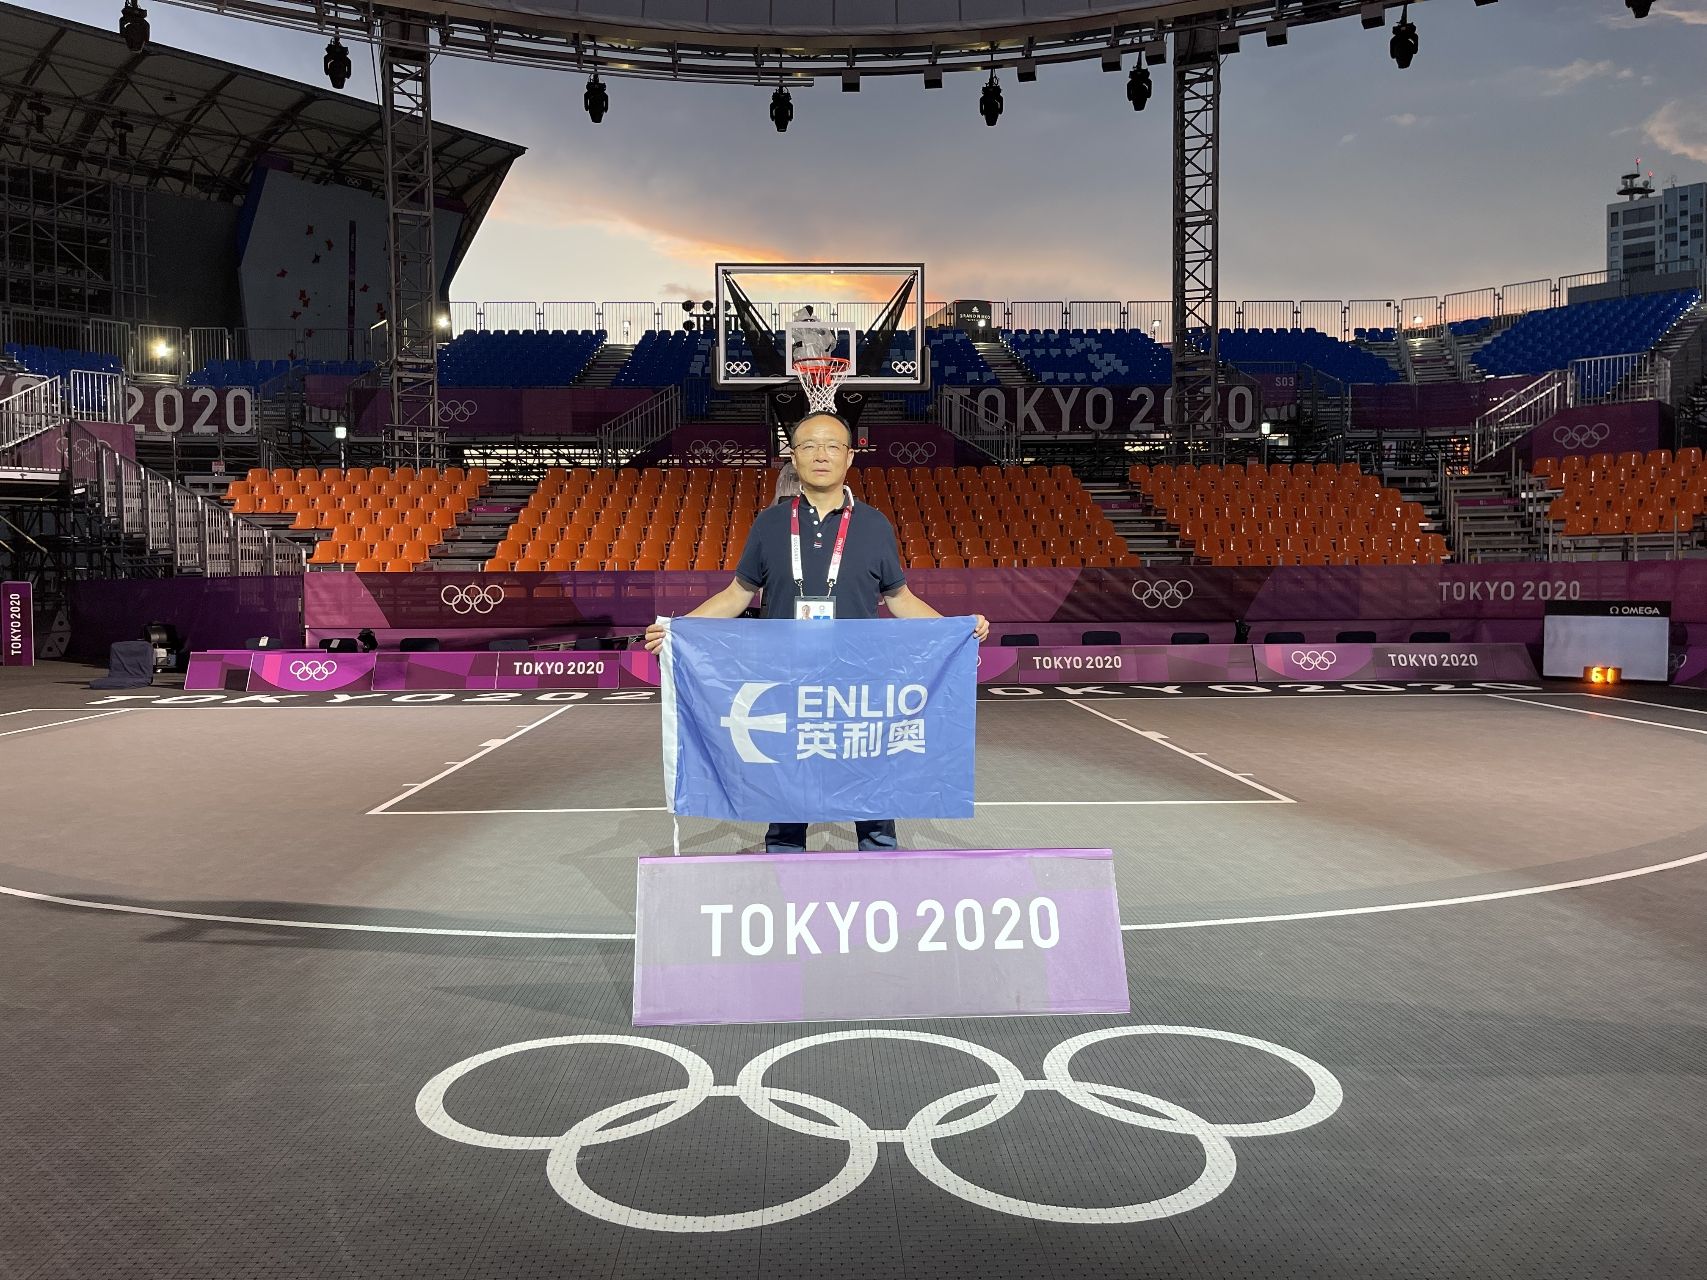 Tokyo Olympics!